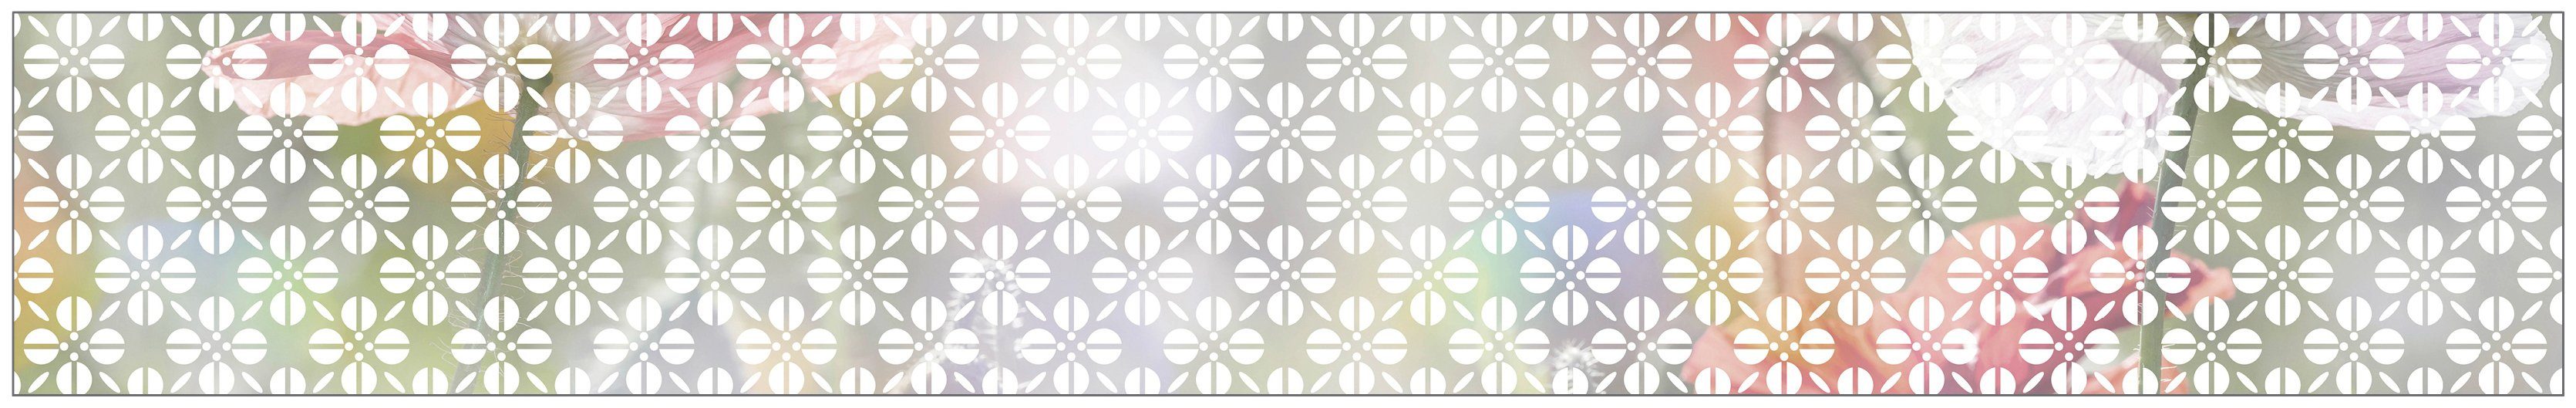 Fensterfolie Look Grafik Blumenmuster white, MySpotti, halbtransparent,  glatt, 200 x 30 cm, statisch haftend